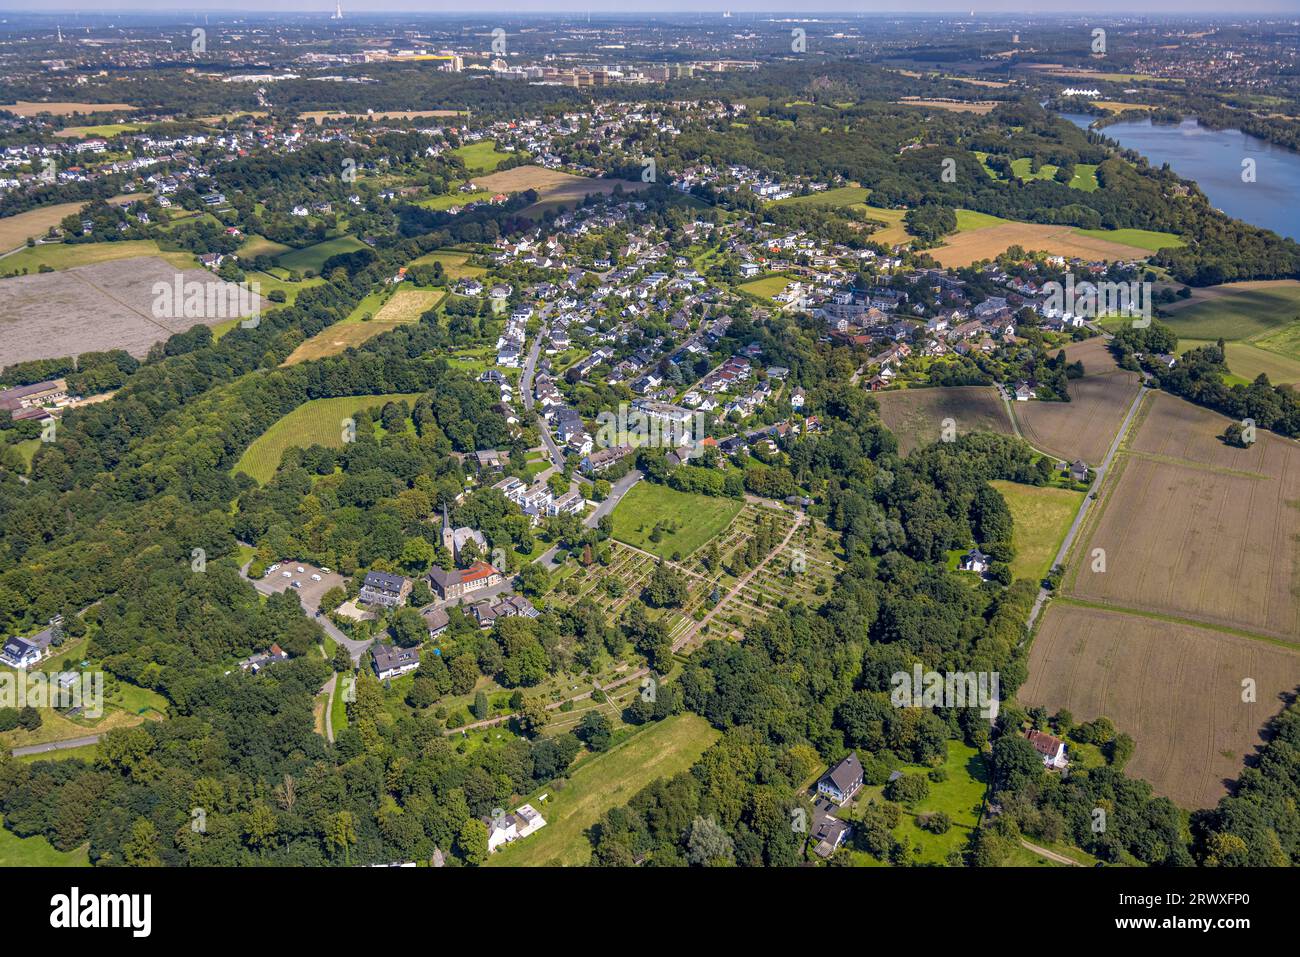 Vue aérienne, vue du village Stiepel avec église du village et cimetière, Stiepel, Bochum, région de la Ruhr, Rhénanie du Nord-Westphalie, Allemagne, site de culte, enterrement Banque D'Images